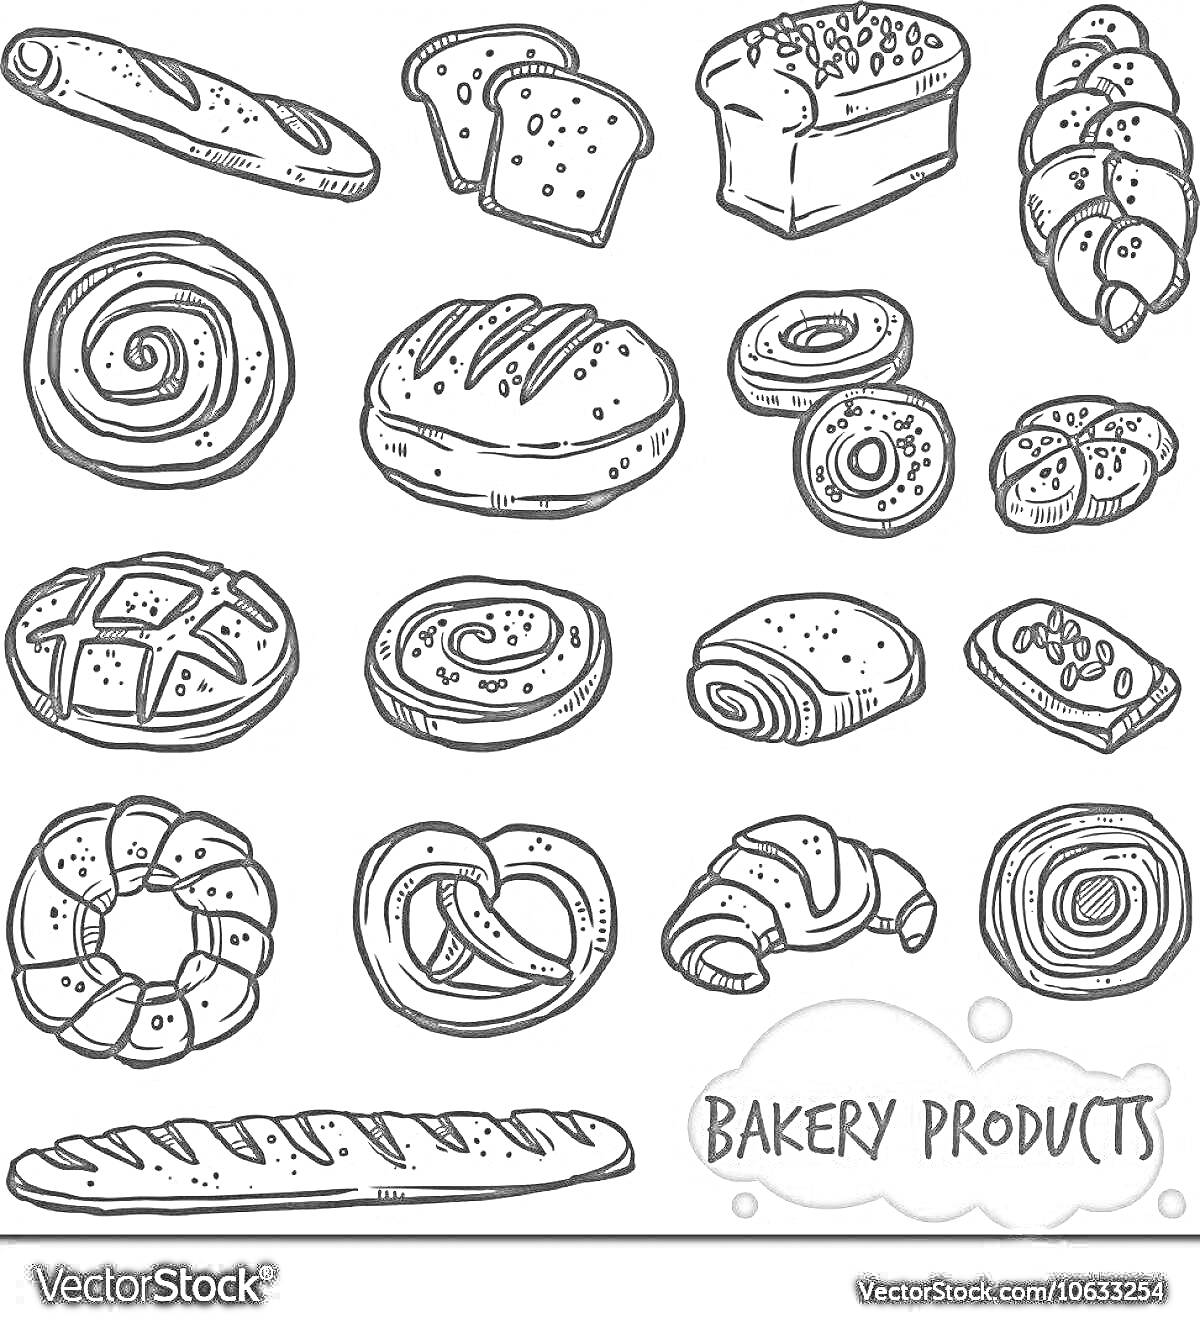 Раскраска Рисунок булочек с различными хлебобулочными изделиями: багет, тосты, батон, плетёнка, улитка, булочки, кекс, крендель, круассан, хлеб, хлебная нарезка